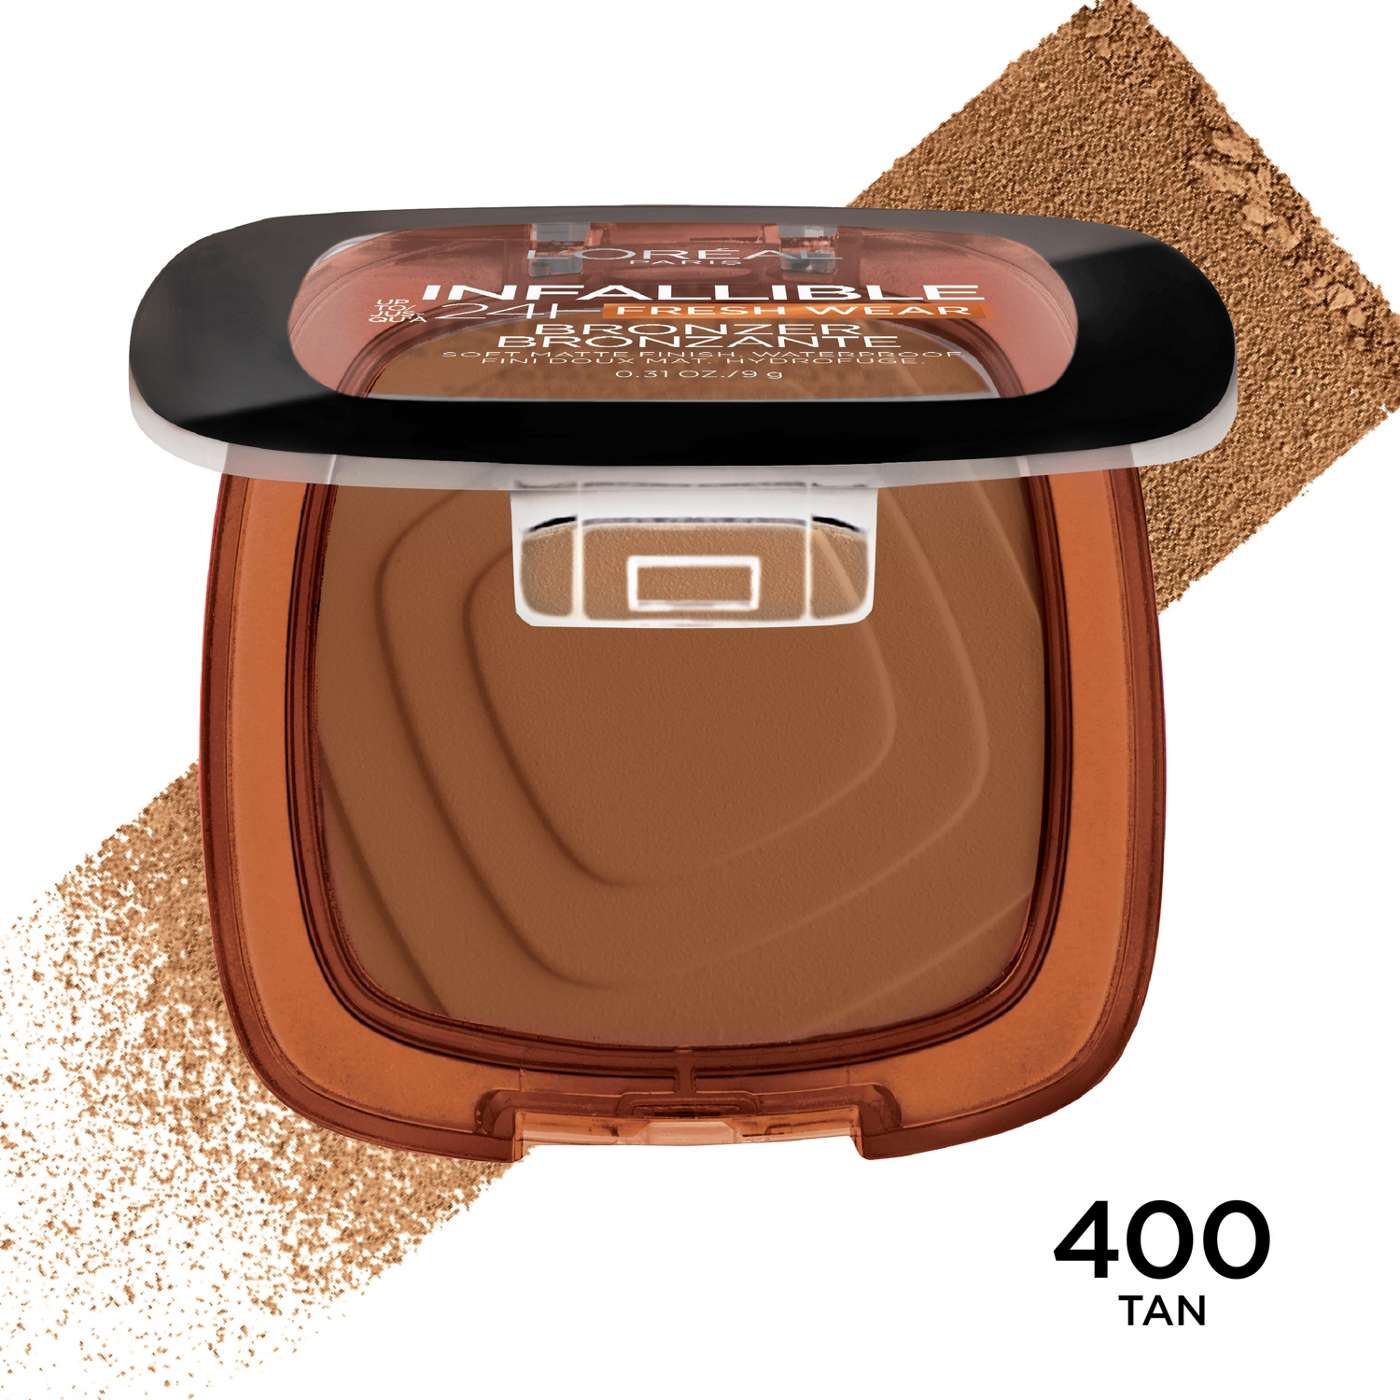 L'Oréal Paris Infallible 24 Hour Fresh Wear Soft Matte Bronzer - 400 Tan; image 4 of 5